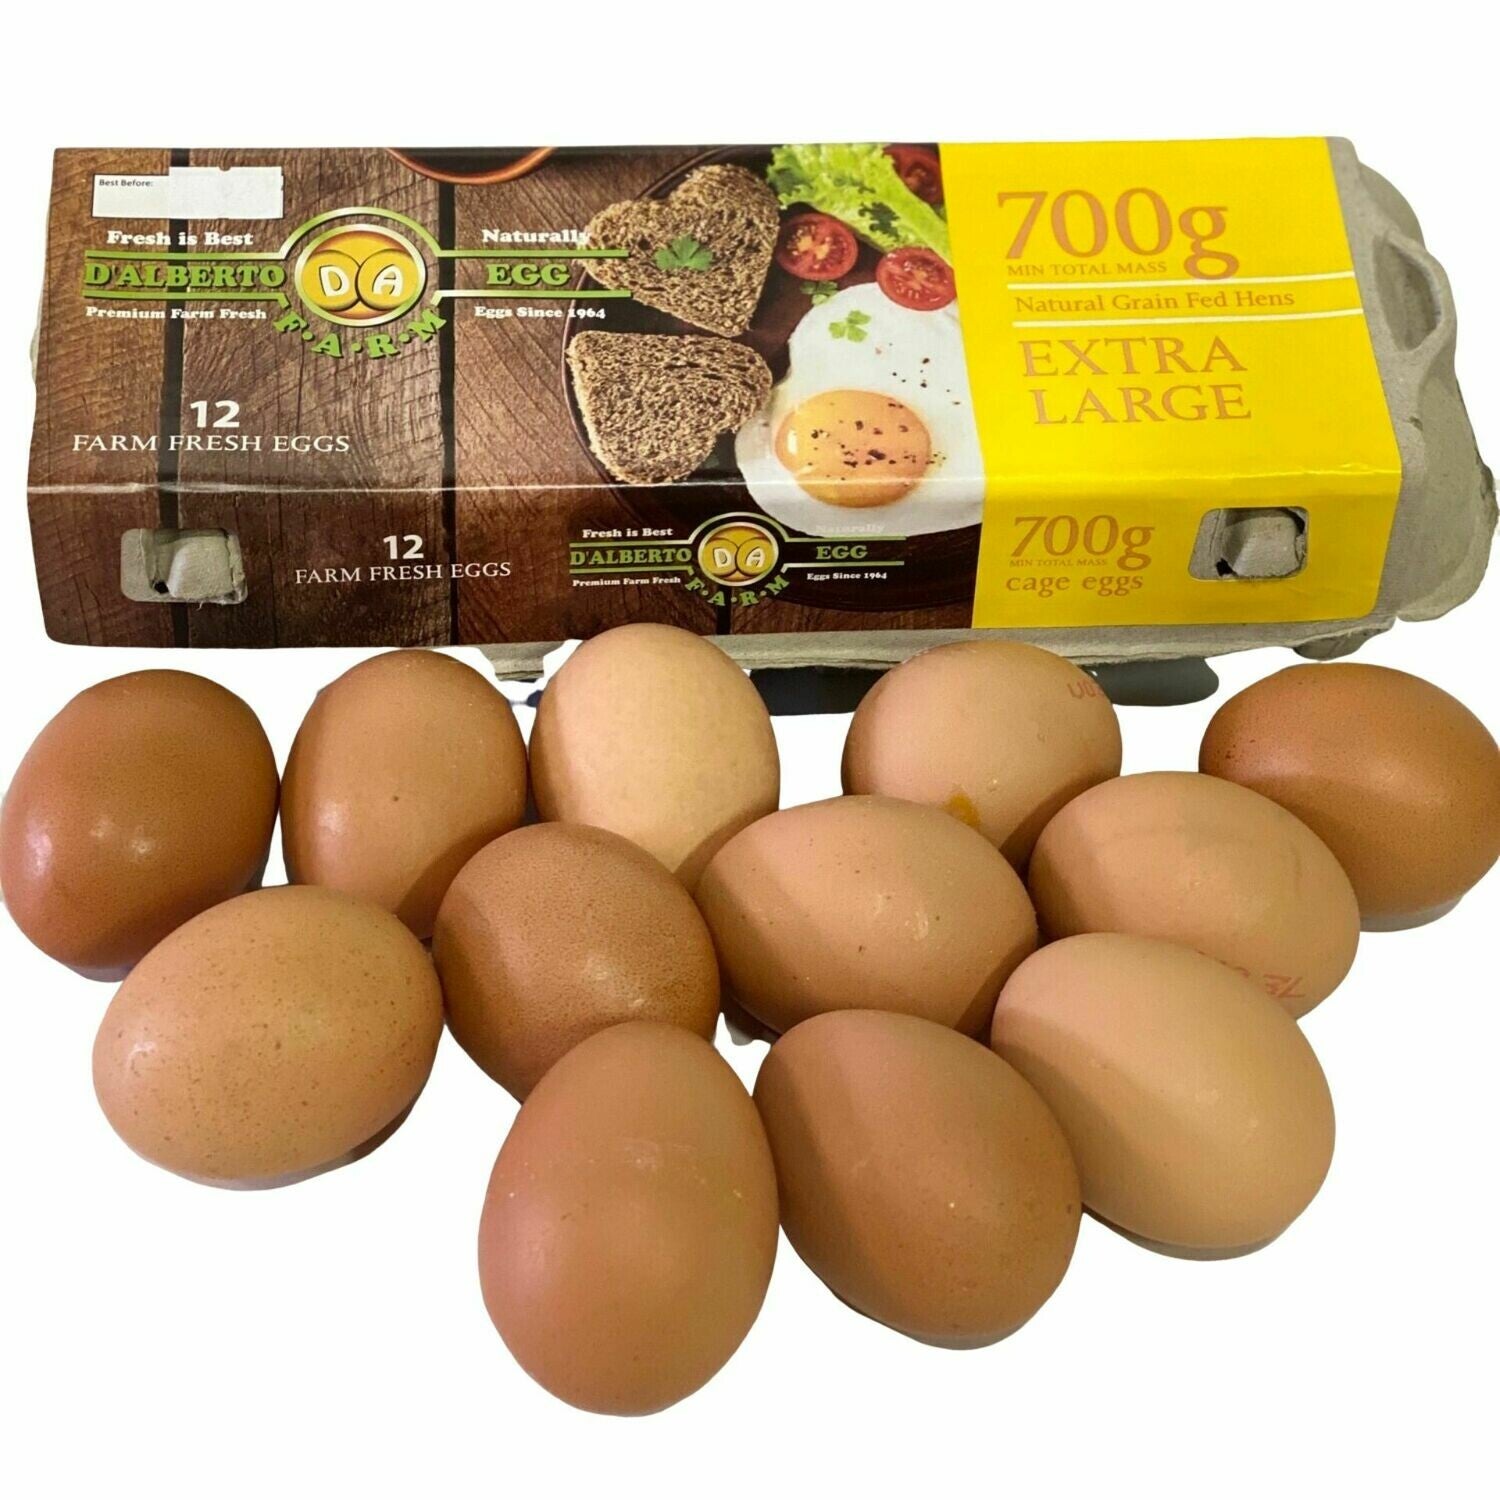 Eggs - Cage per dozen